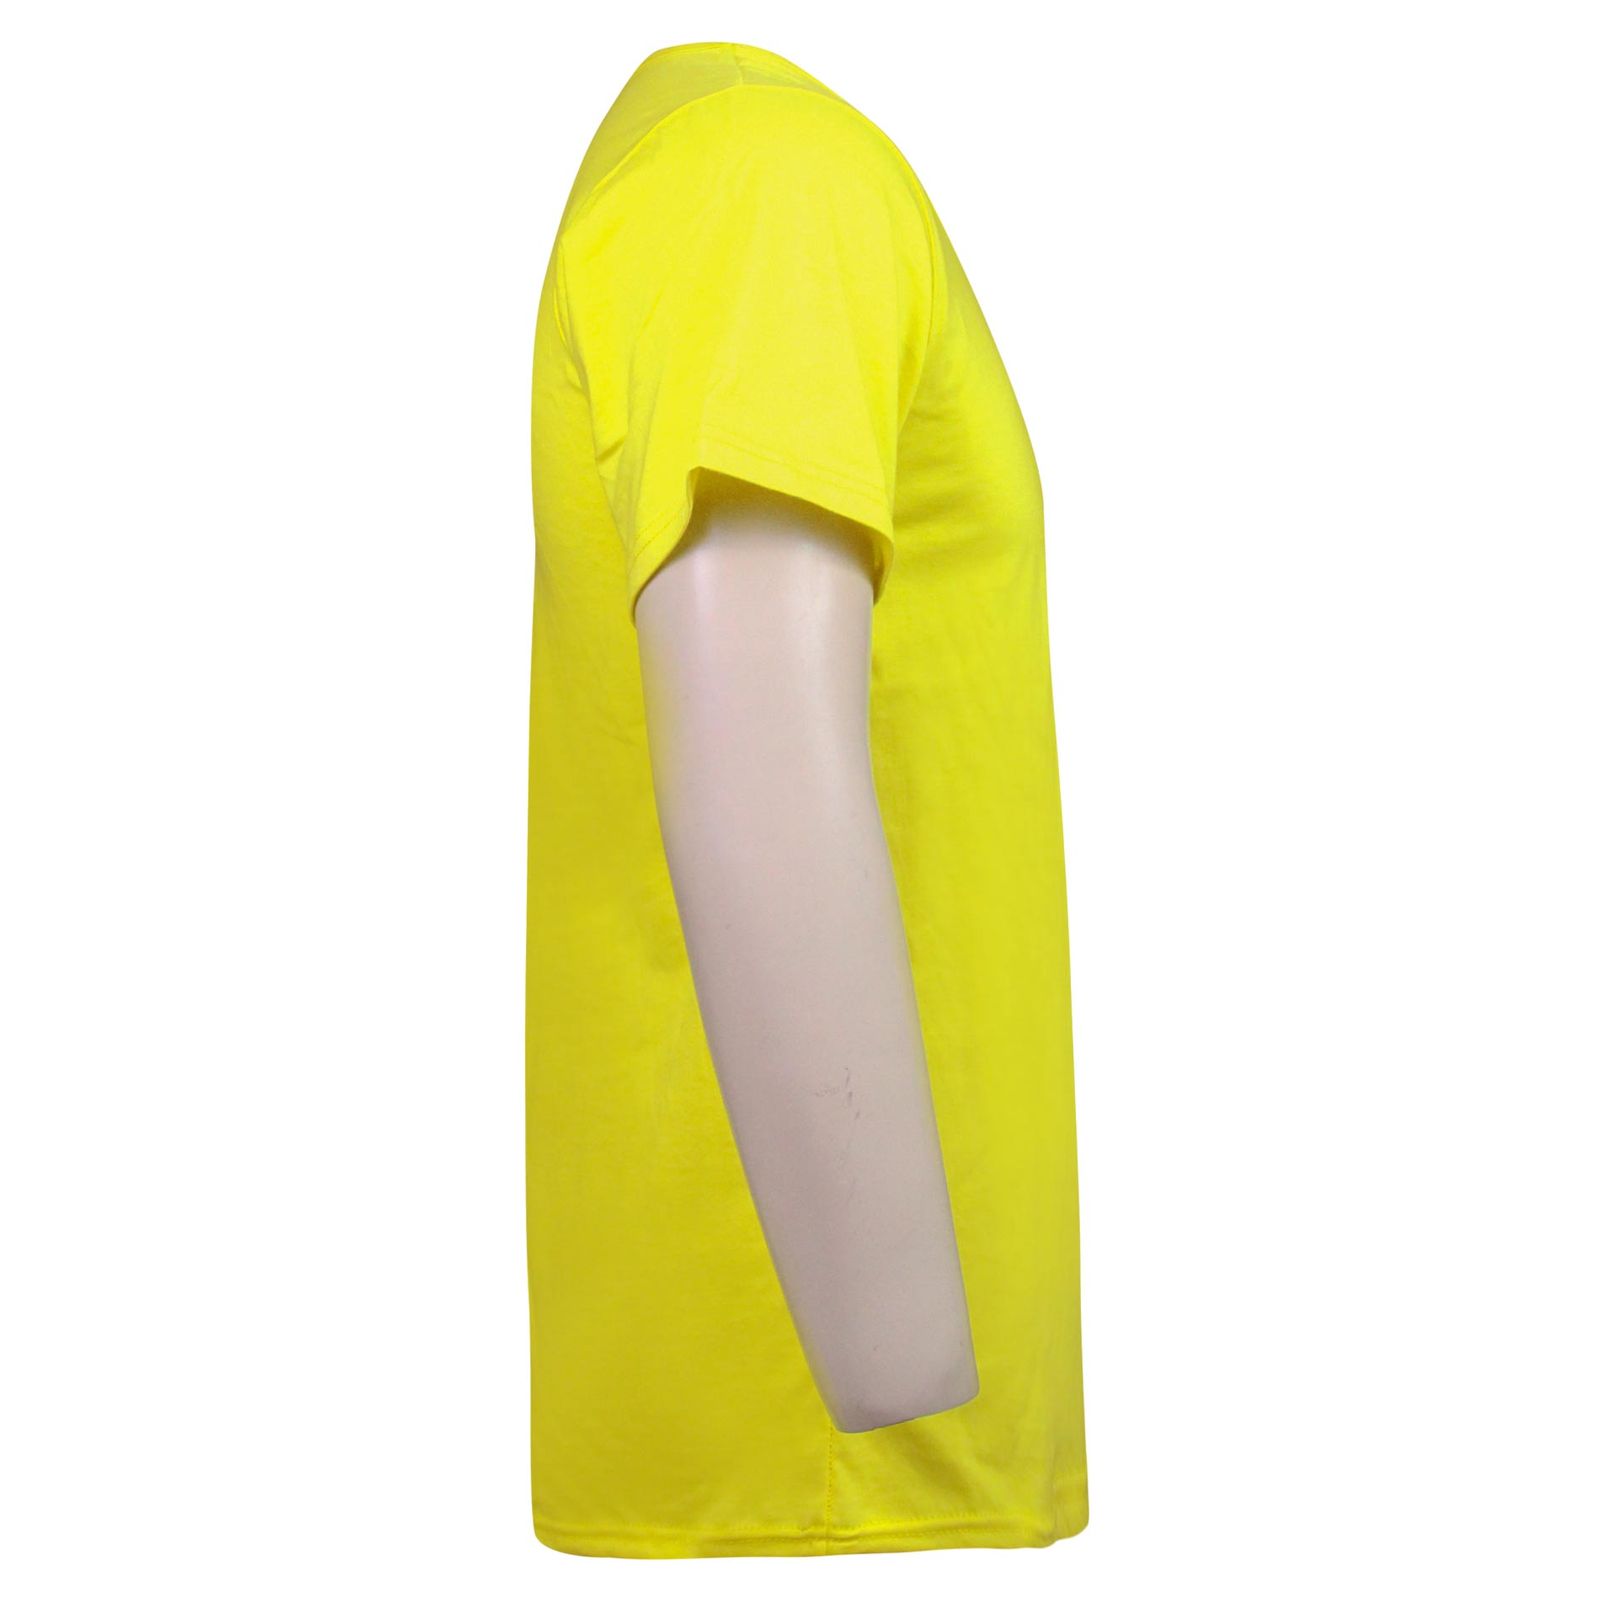 زیرپوش آستین دار مردانه ماییلدا مدل پنبه ای کد 4710 رنگ زرد -  - 3